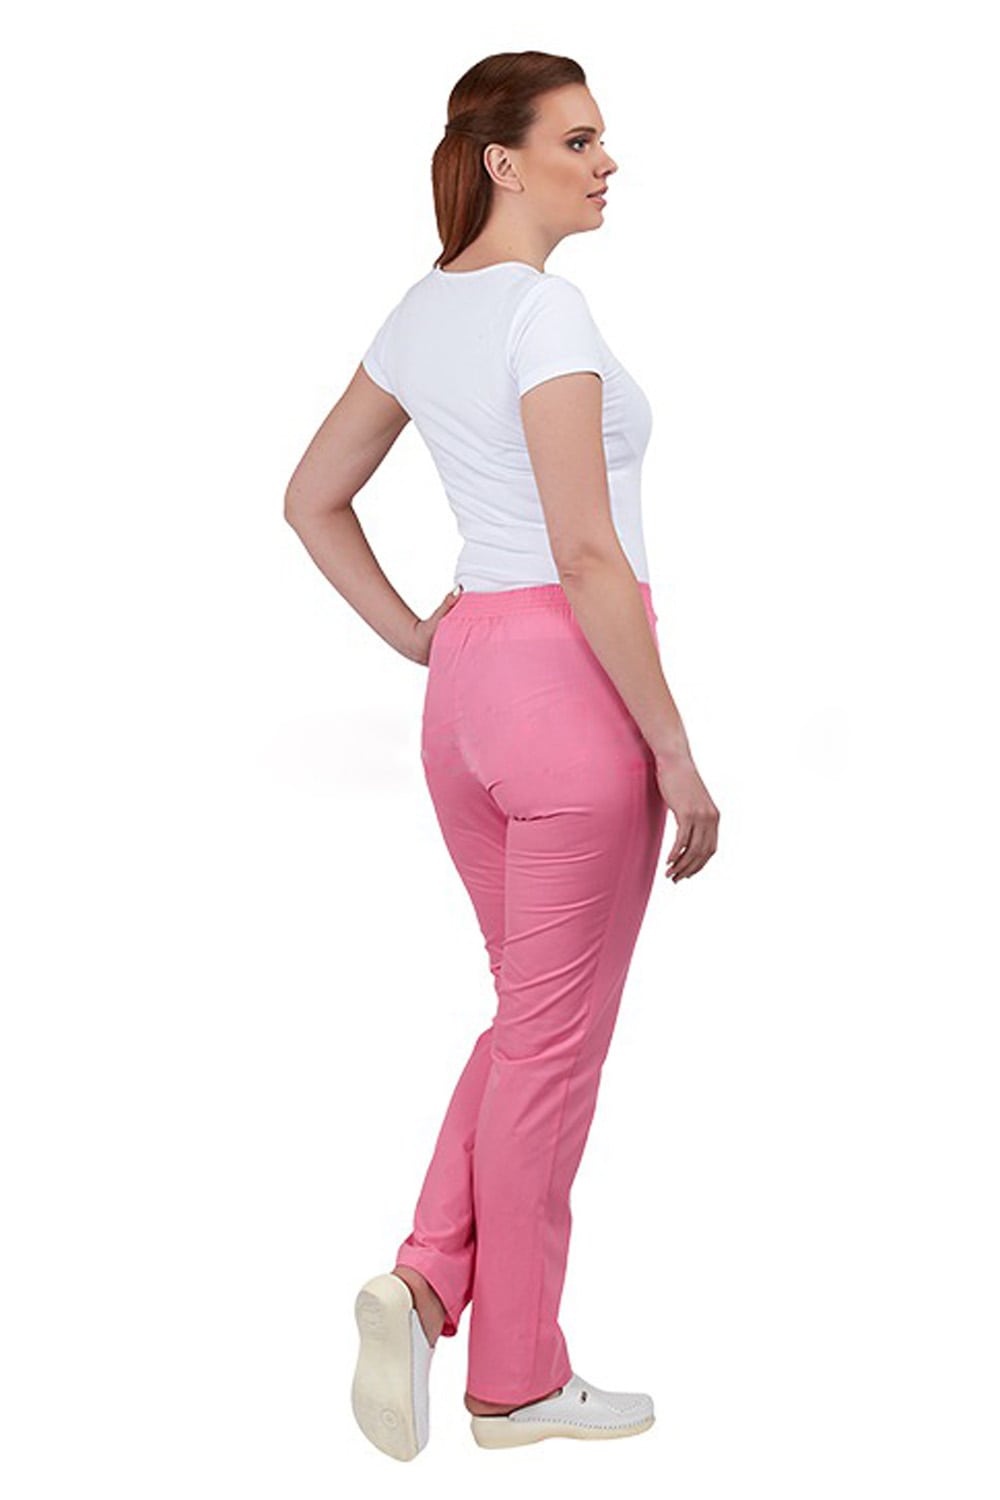 ВДОХНОВЕНИЕ розовые женские медицинские брюки купить оптом и в розницу –Екатеринбург - OLIMED